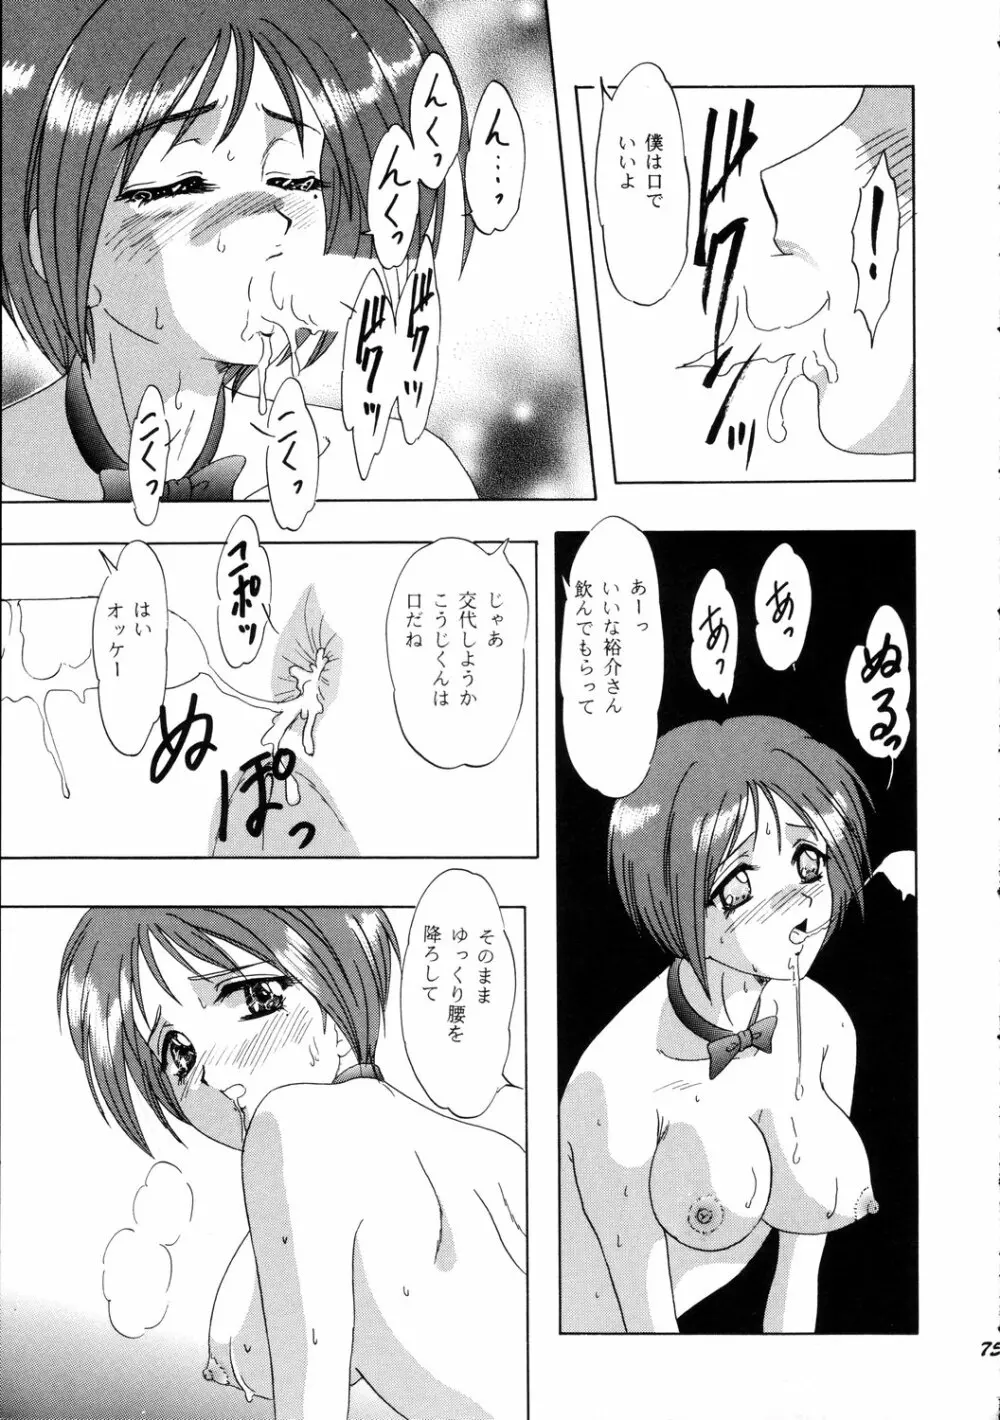 LUNCH BOX 36 - にんじんフルコース - page74